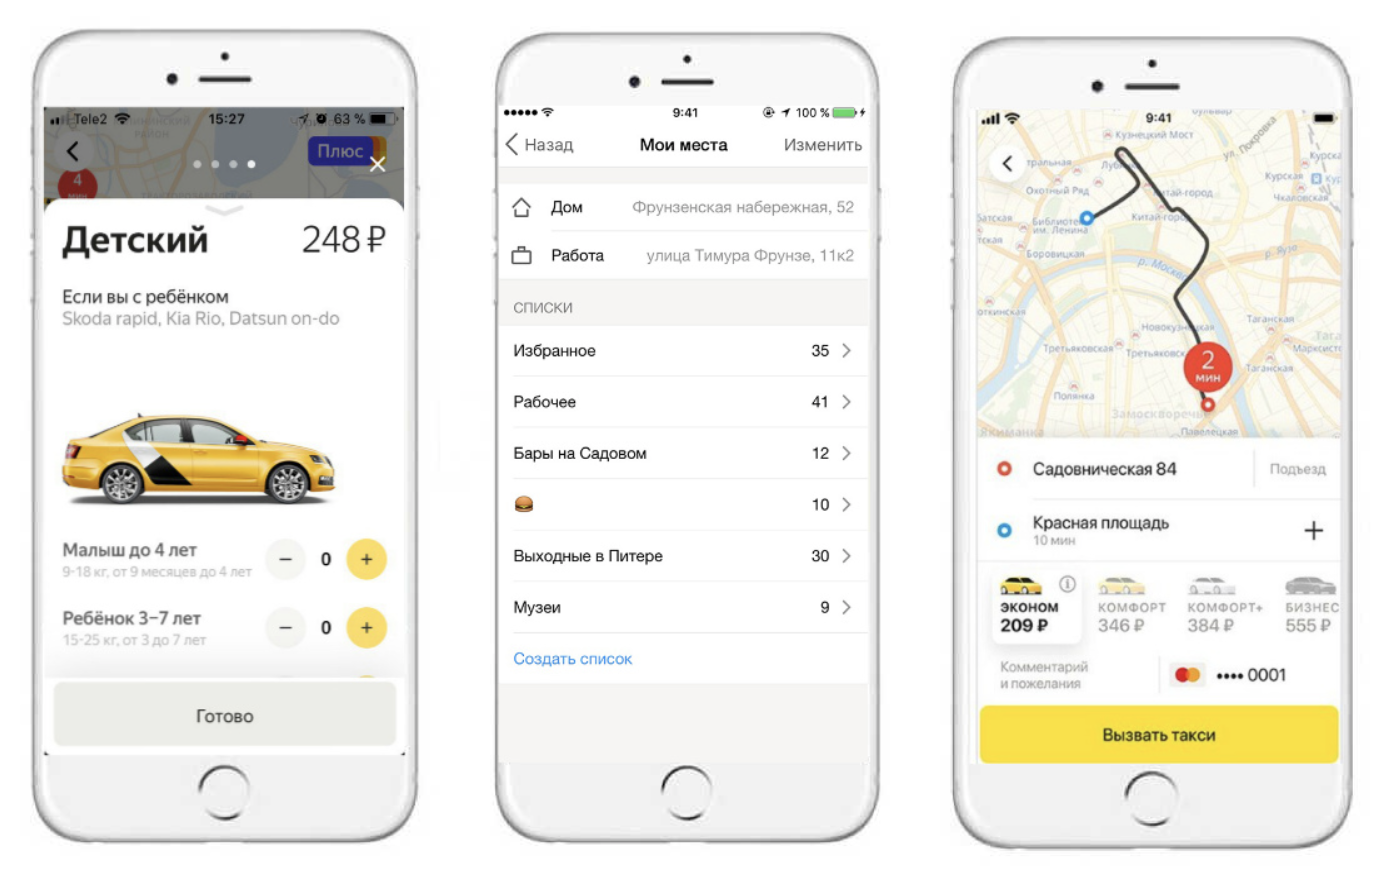 Мобильное приложение такси. Сменить таксопарк